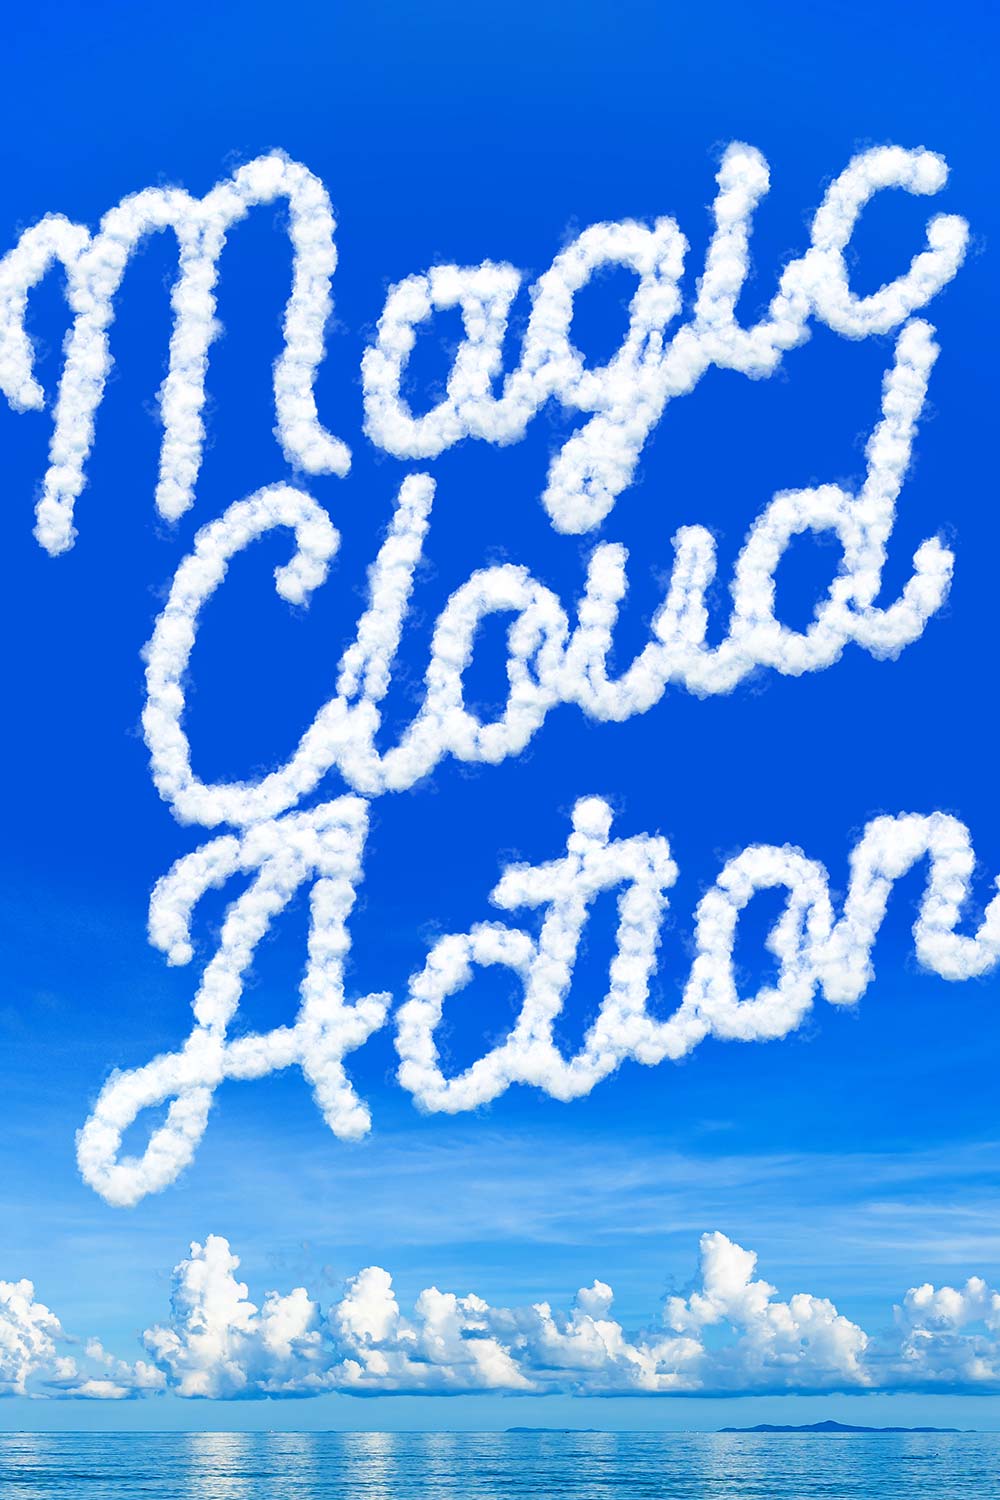 Cloud Photoshop Action pinterest preview image.